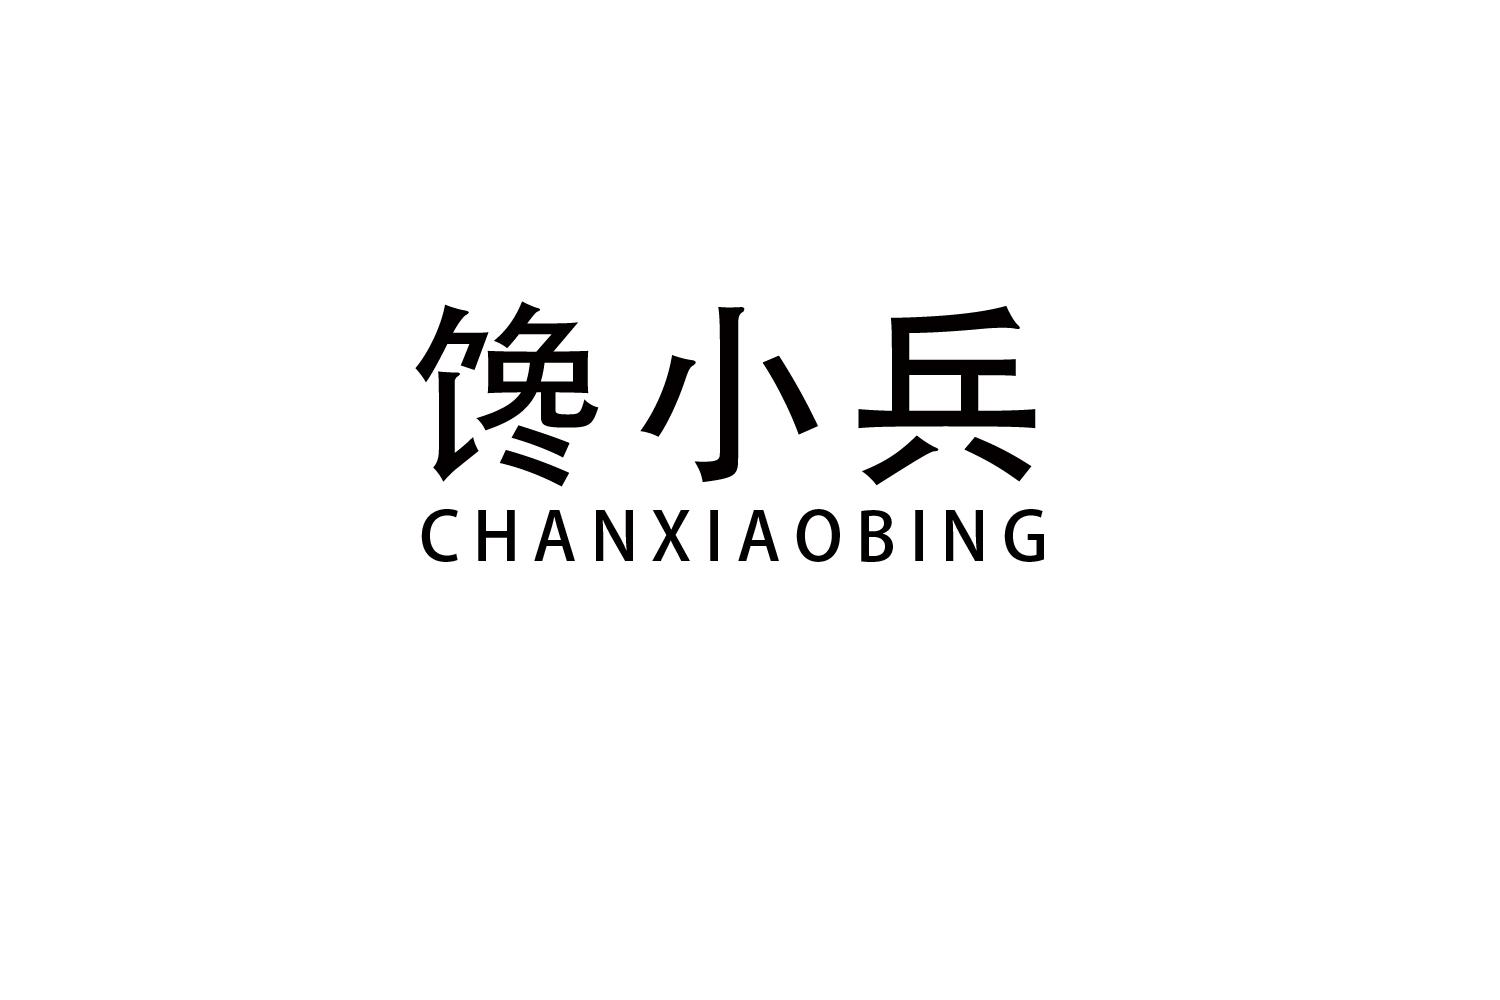 馋小兵
CHANXIAOBING